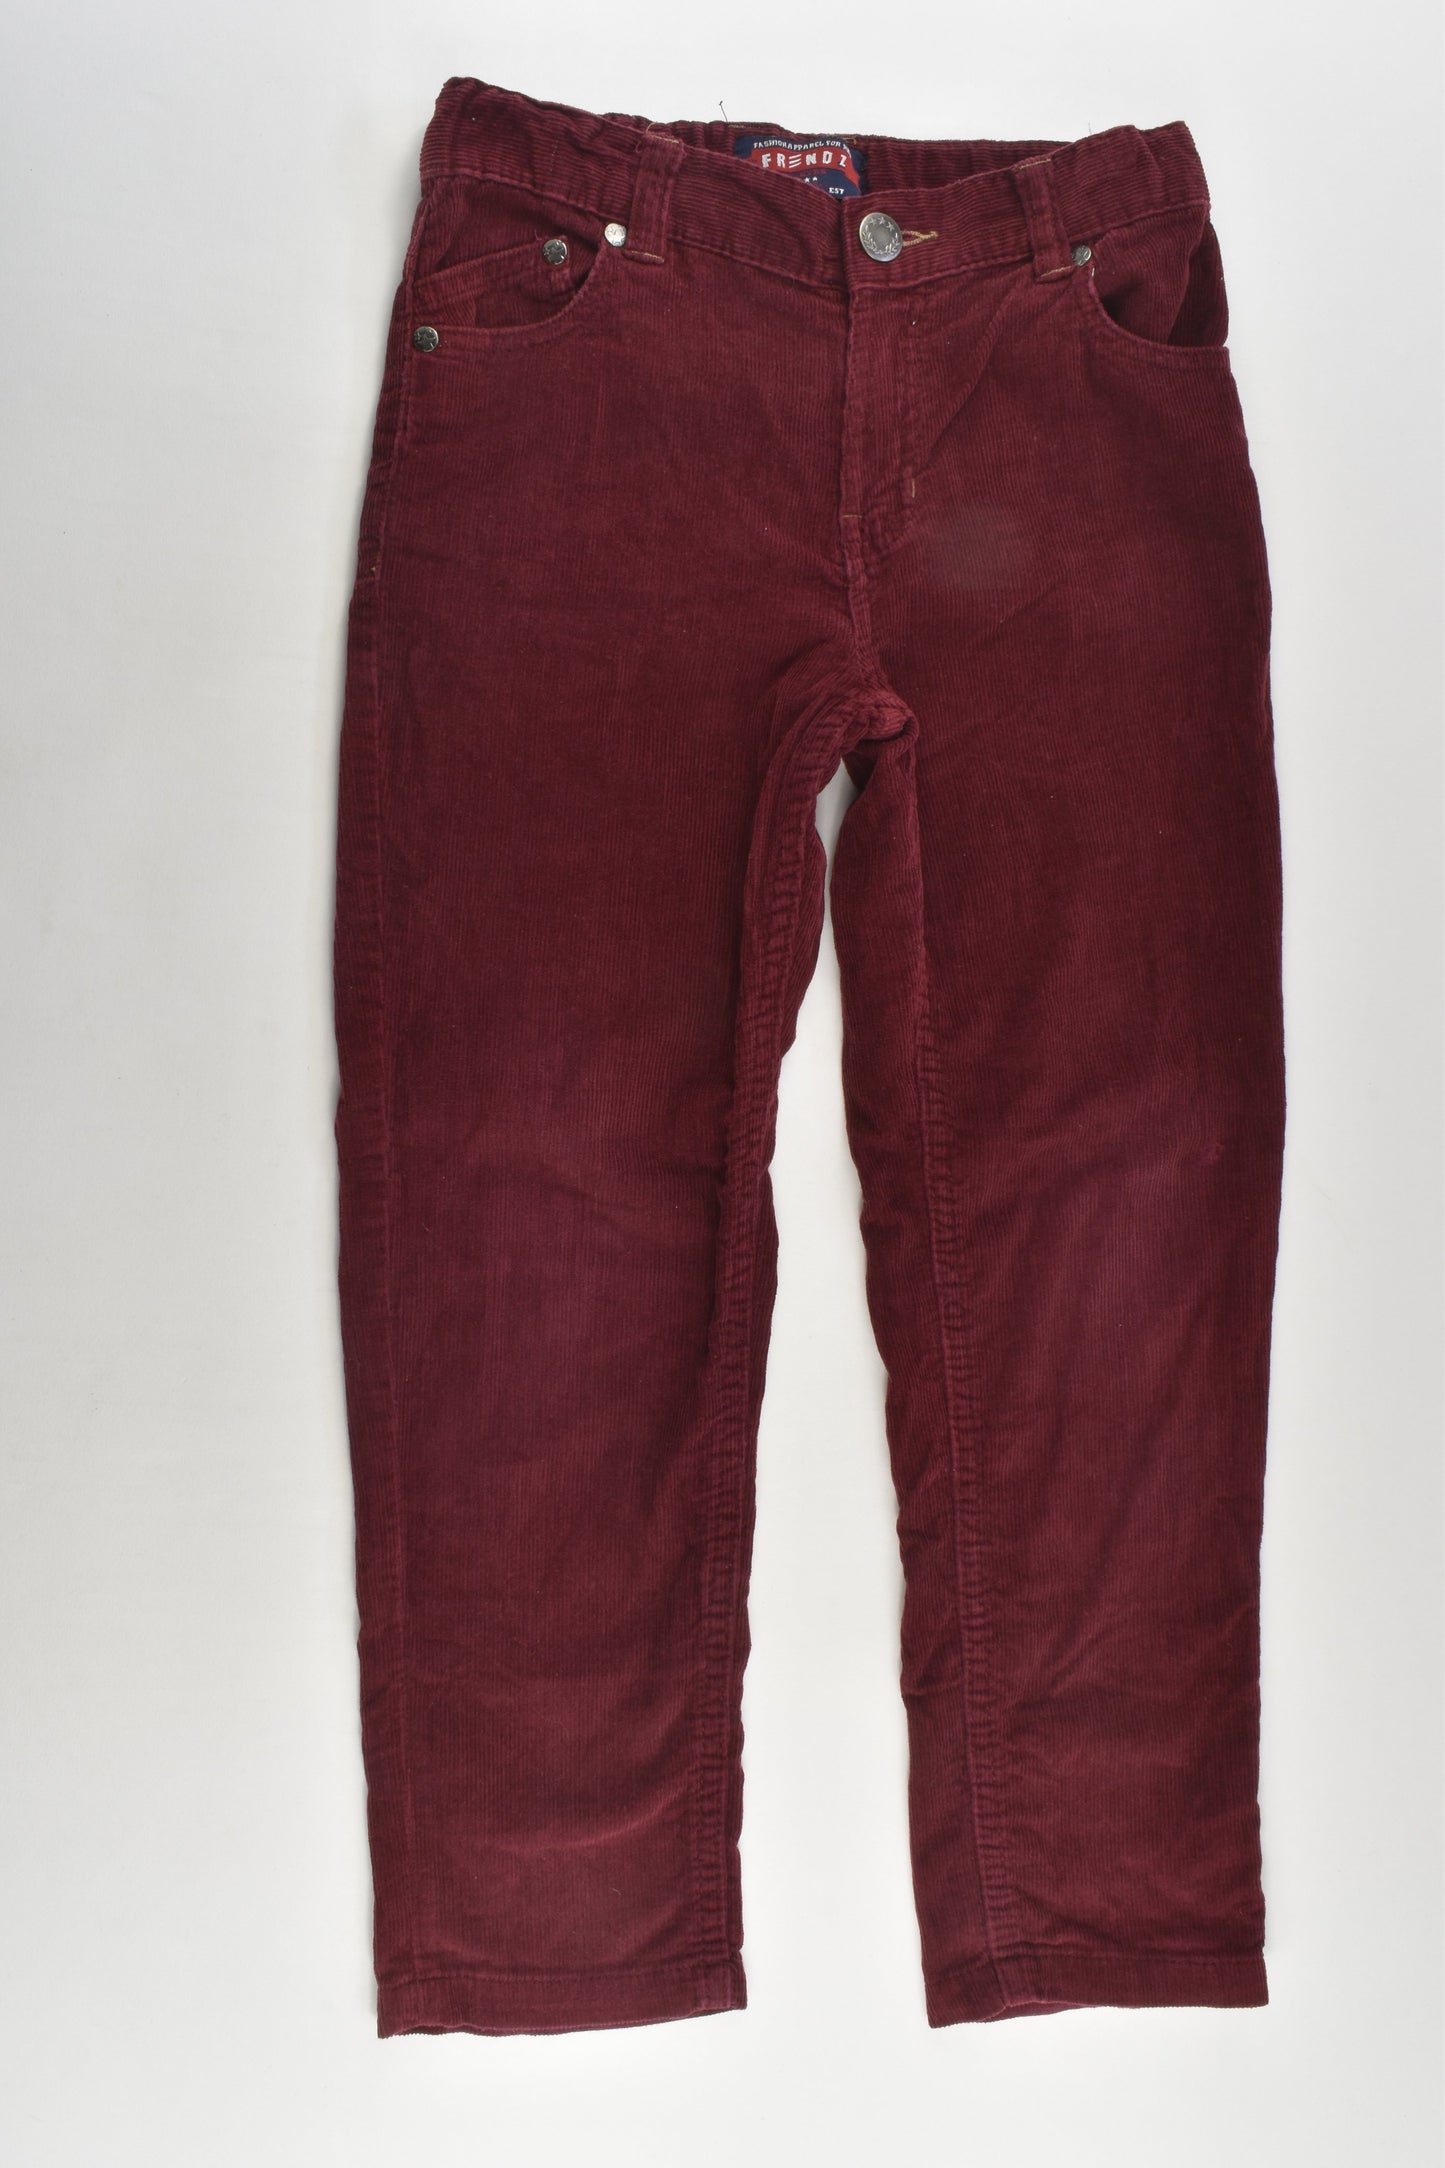 Frendz Size 5-6 Soft Cord Pants